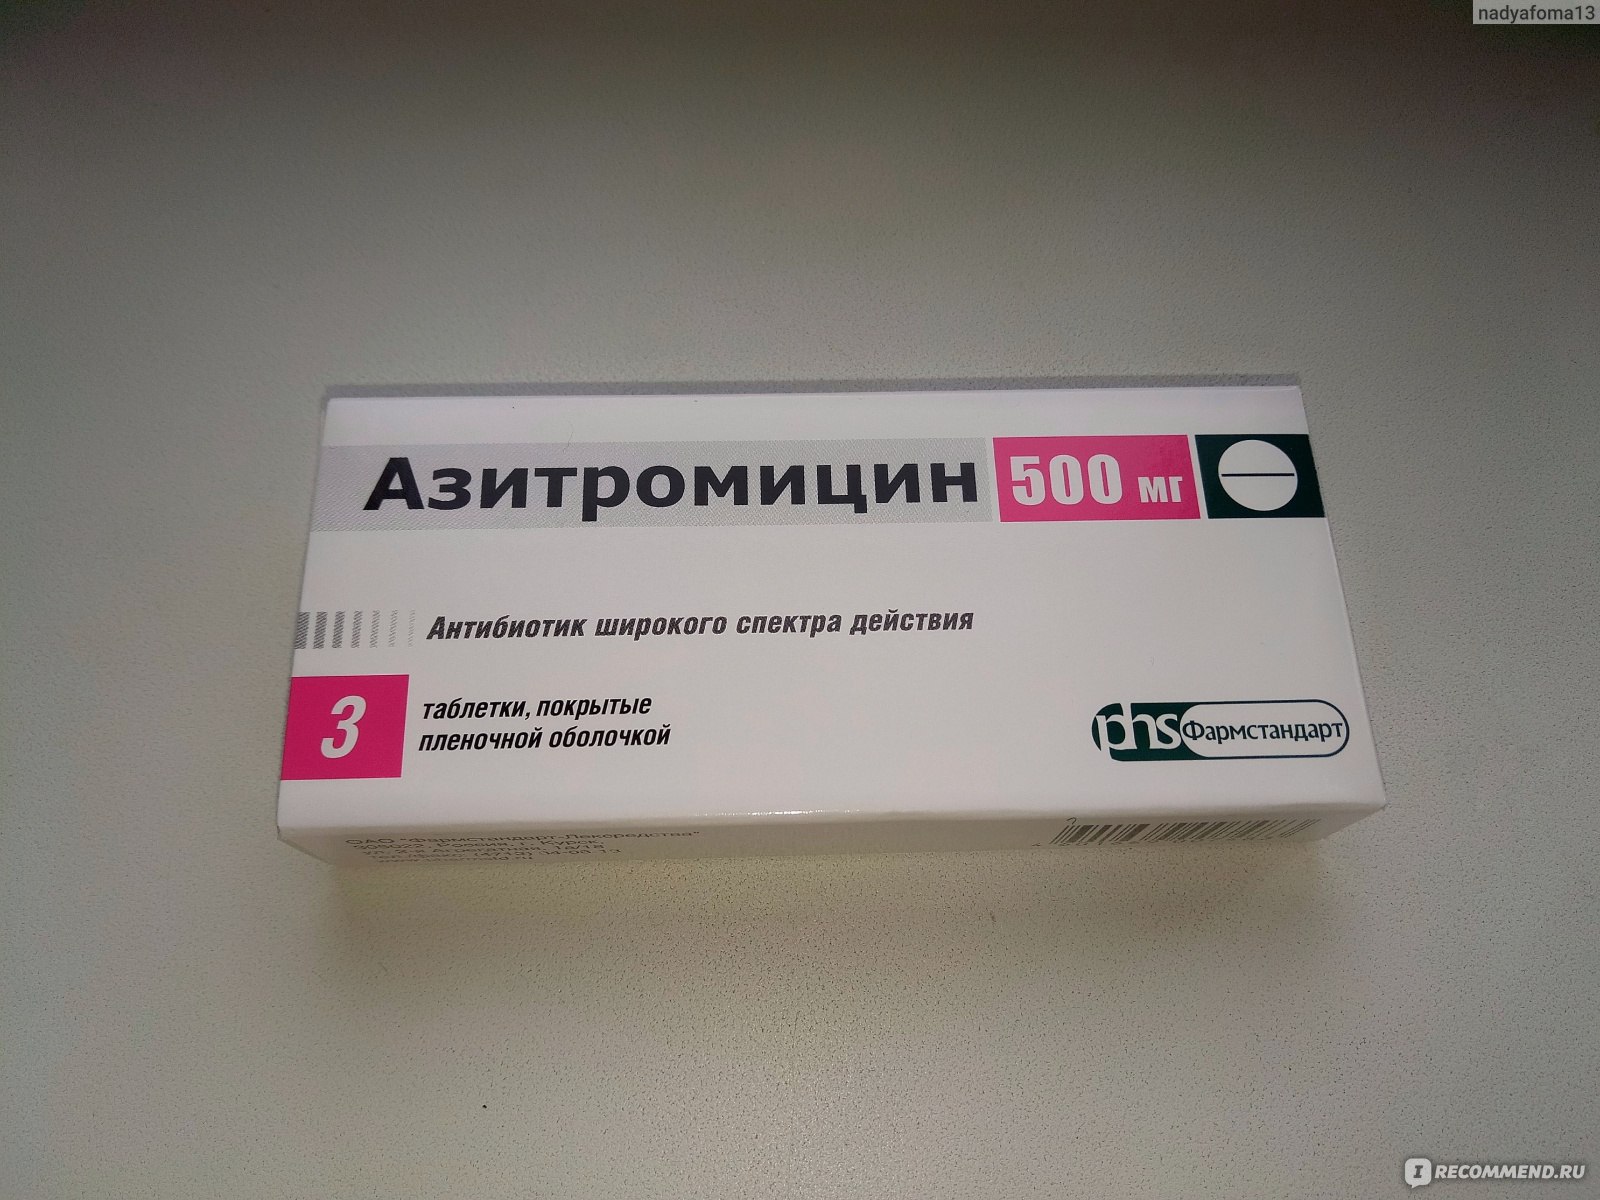 Антибиотики нового поколения таблетках. Антибиотик Азитромицин 500 мг. Азитромицин 500 мг Фармстандарт. Азитромицин 500 антибиотик широкого спектра. Азитромицин Фармстандарт Лексредства.